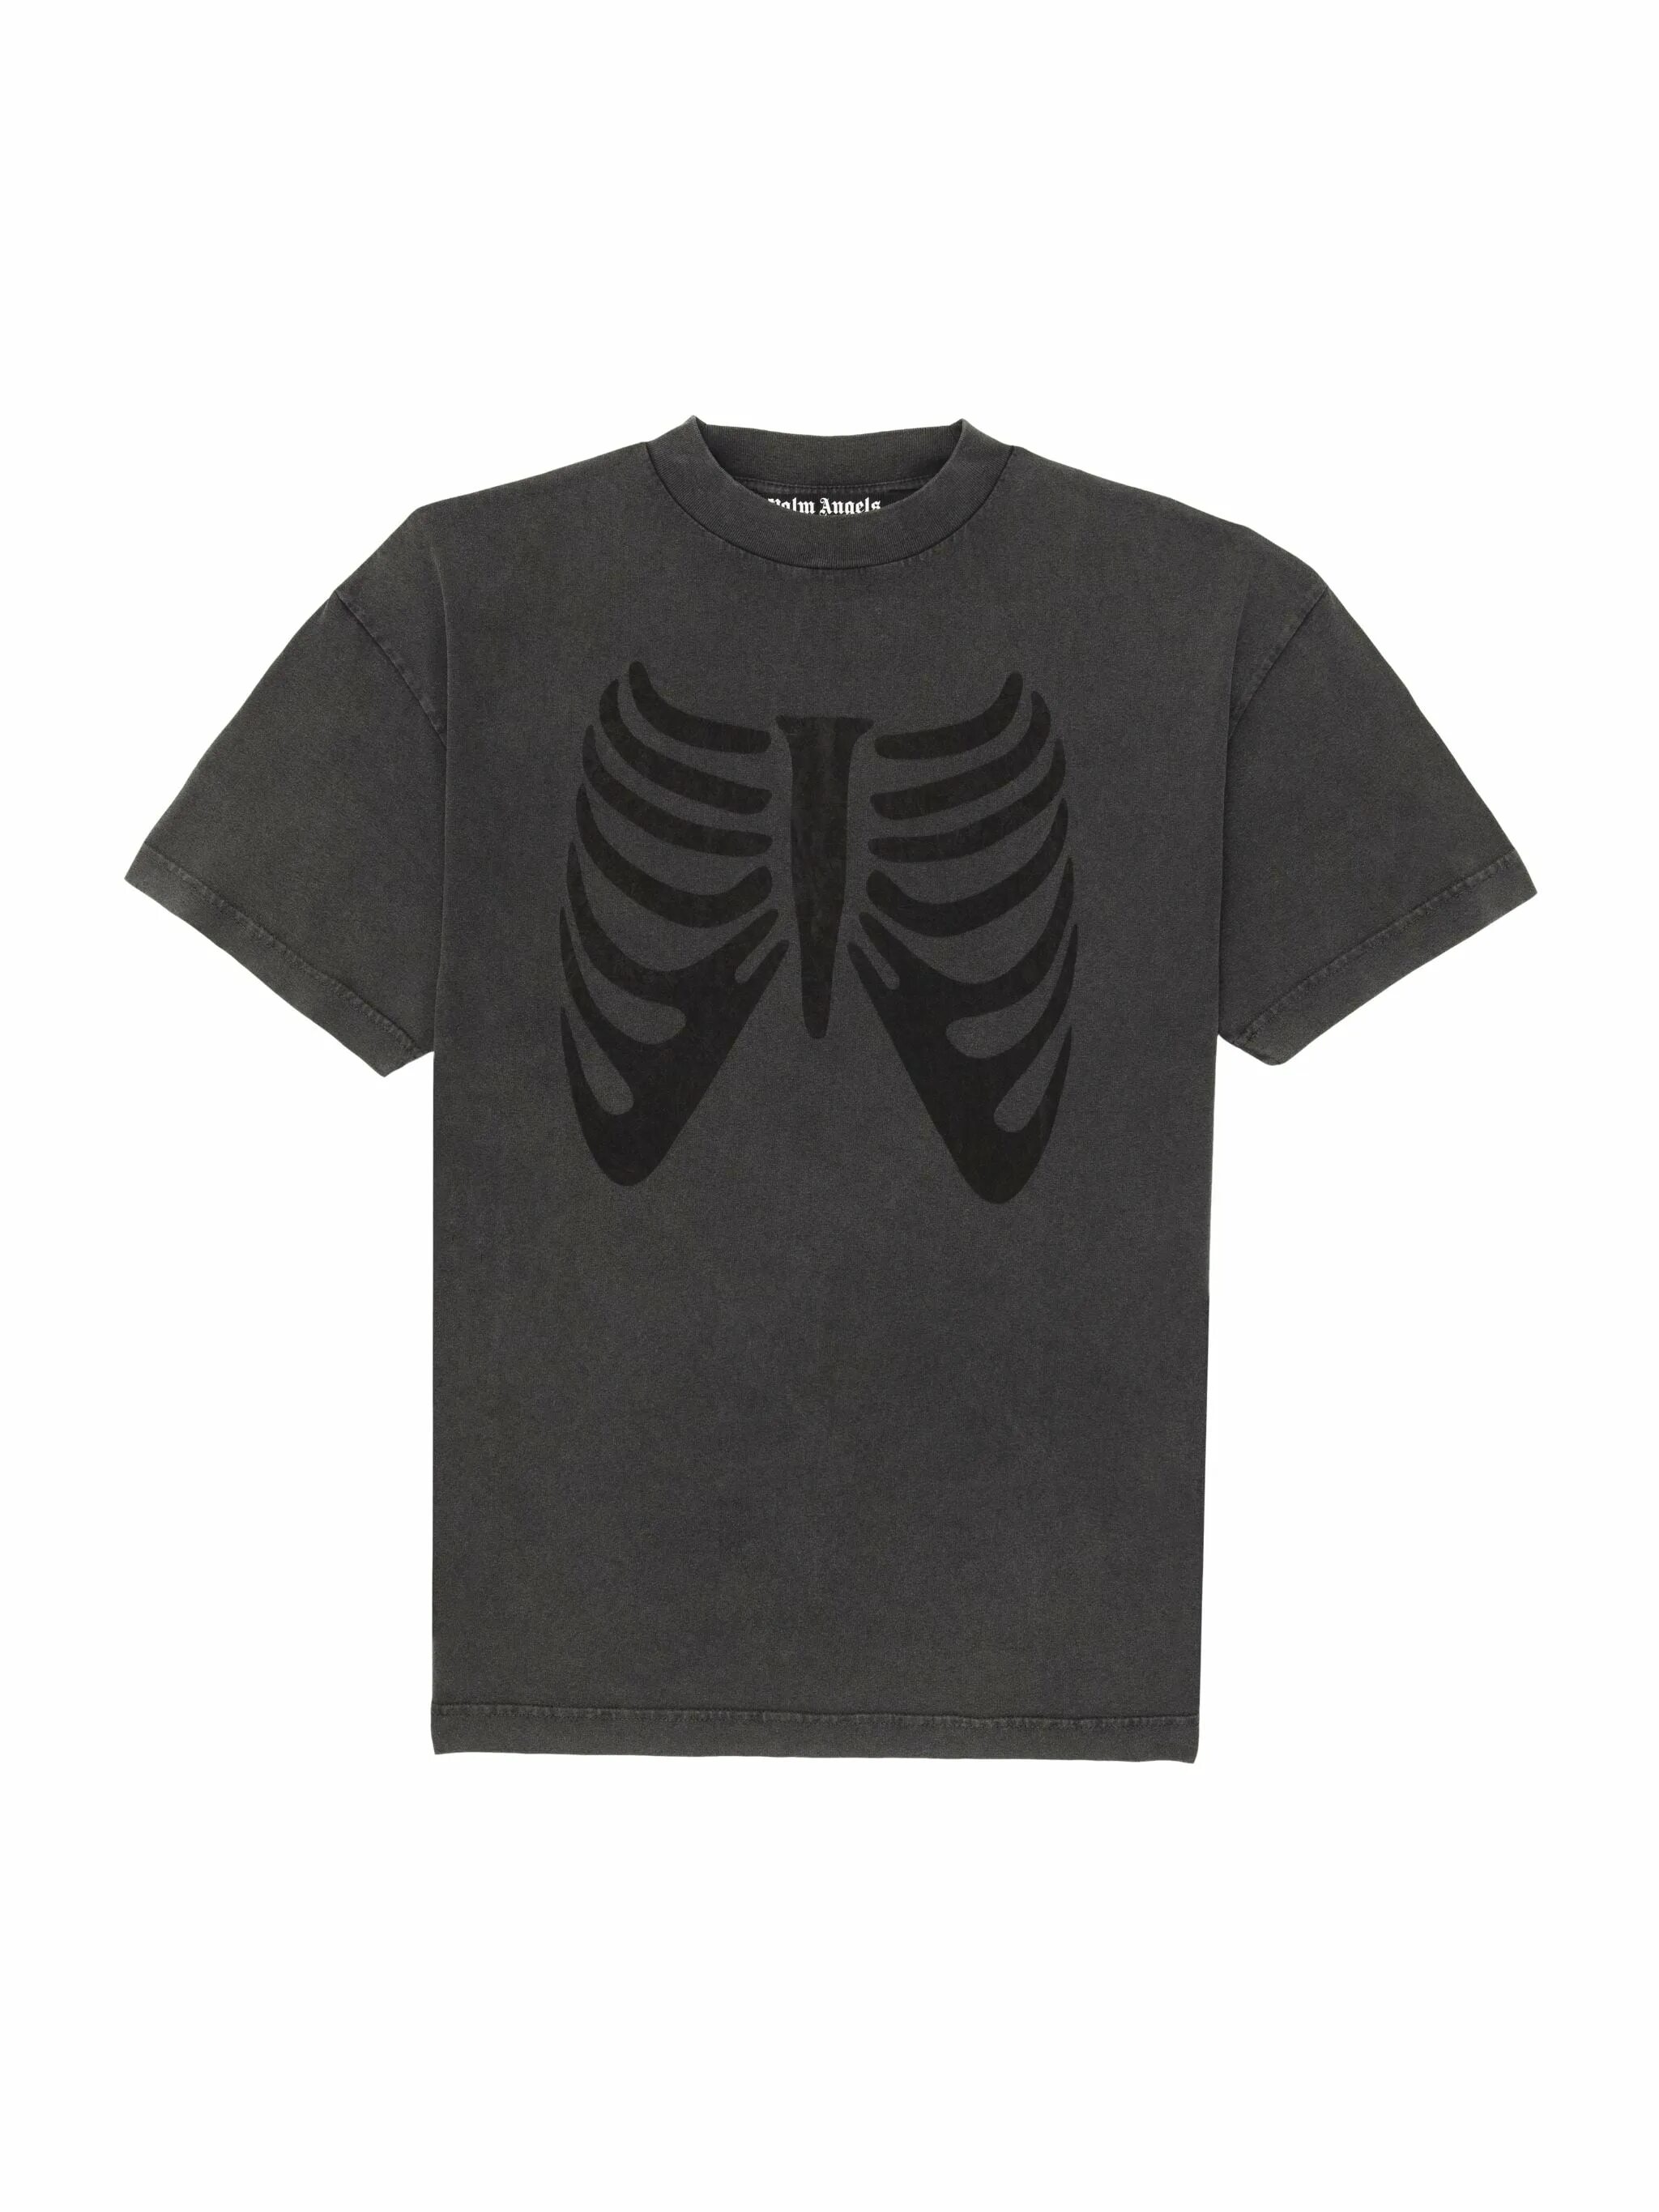 Футболка ураган хокаге. Футболка Palm Angels Skeleton. Футболка Palm Angels Skeleton Bear. Palm Angels Skeleton t-Shirt футболка. Palm Angels Skeleton Black футболка.